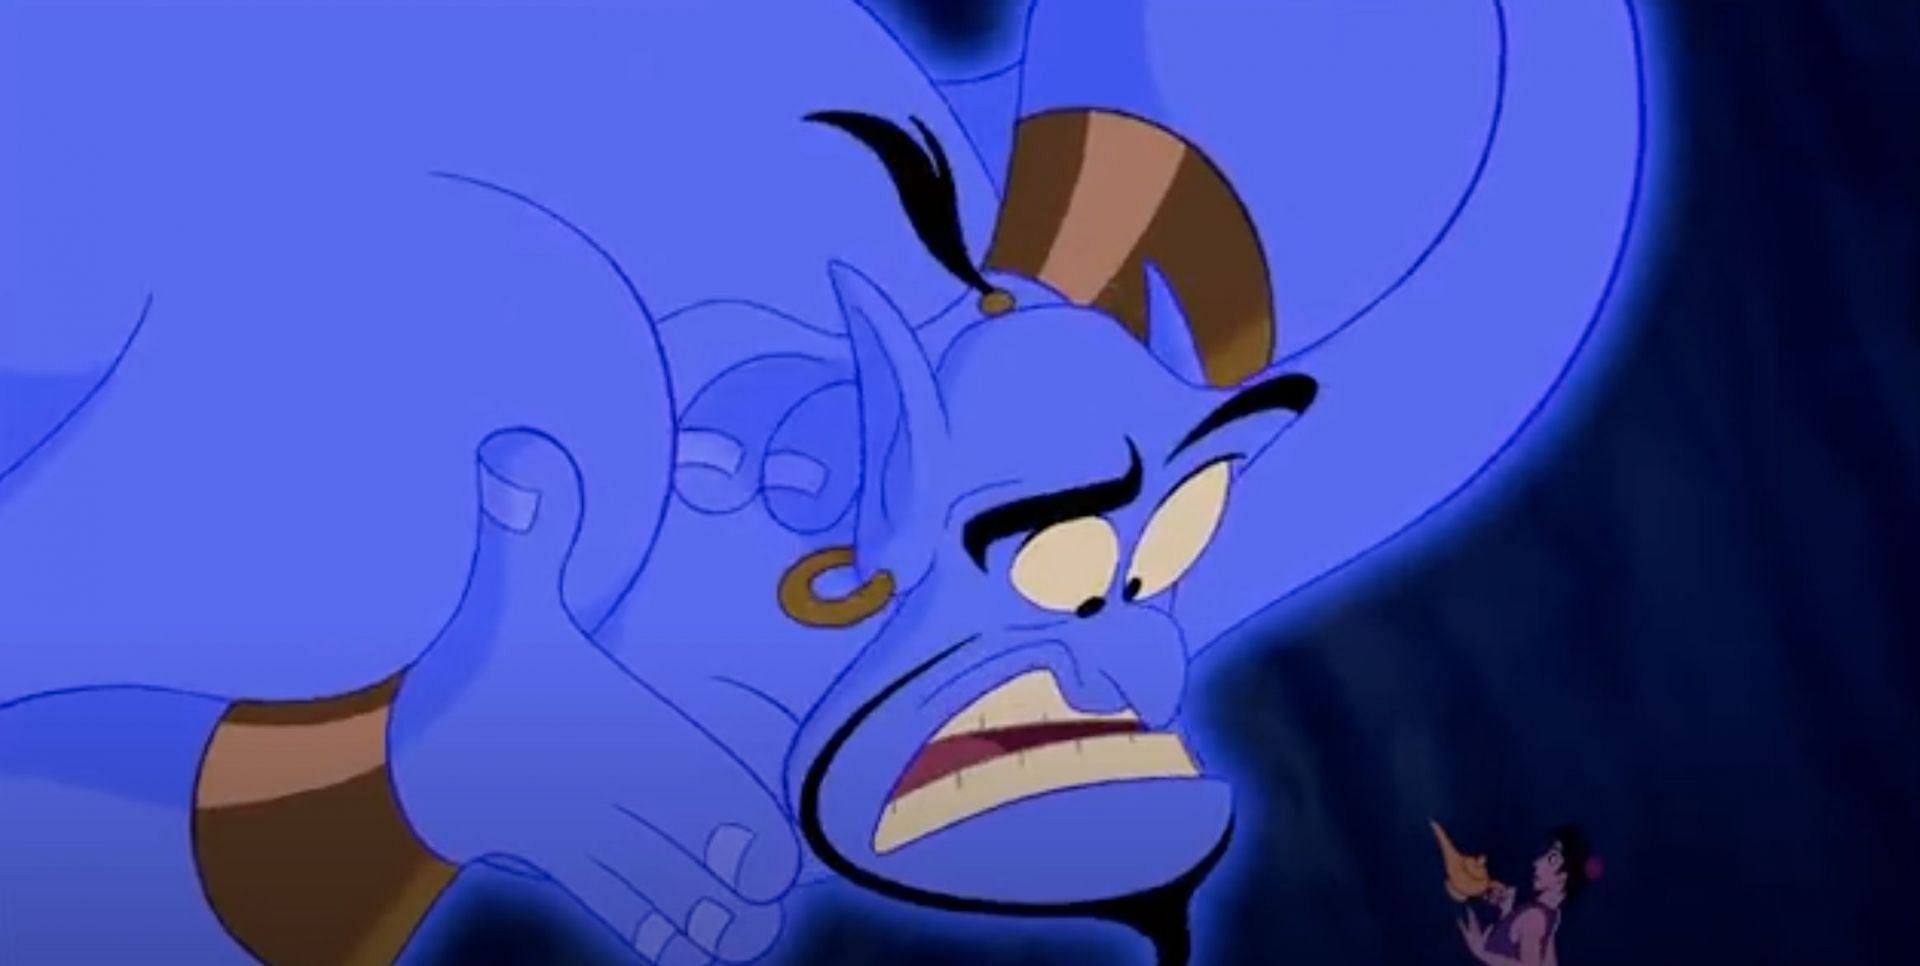 Robin Williams&rsquo; Genie in Aladdin (Image via Disney)